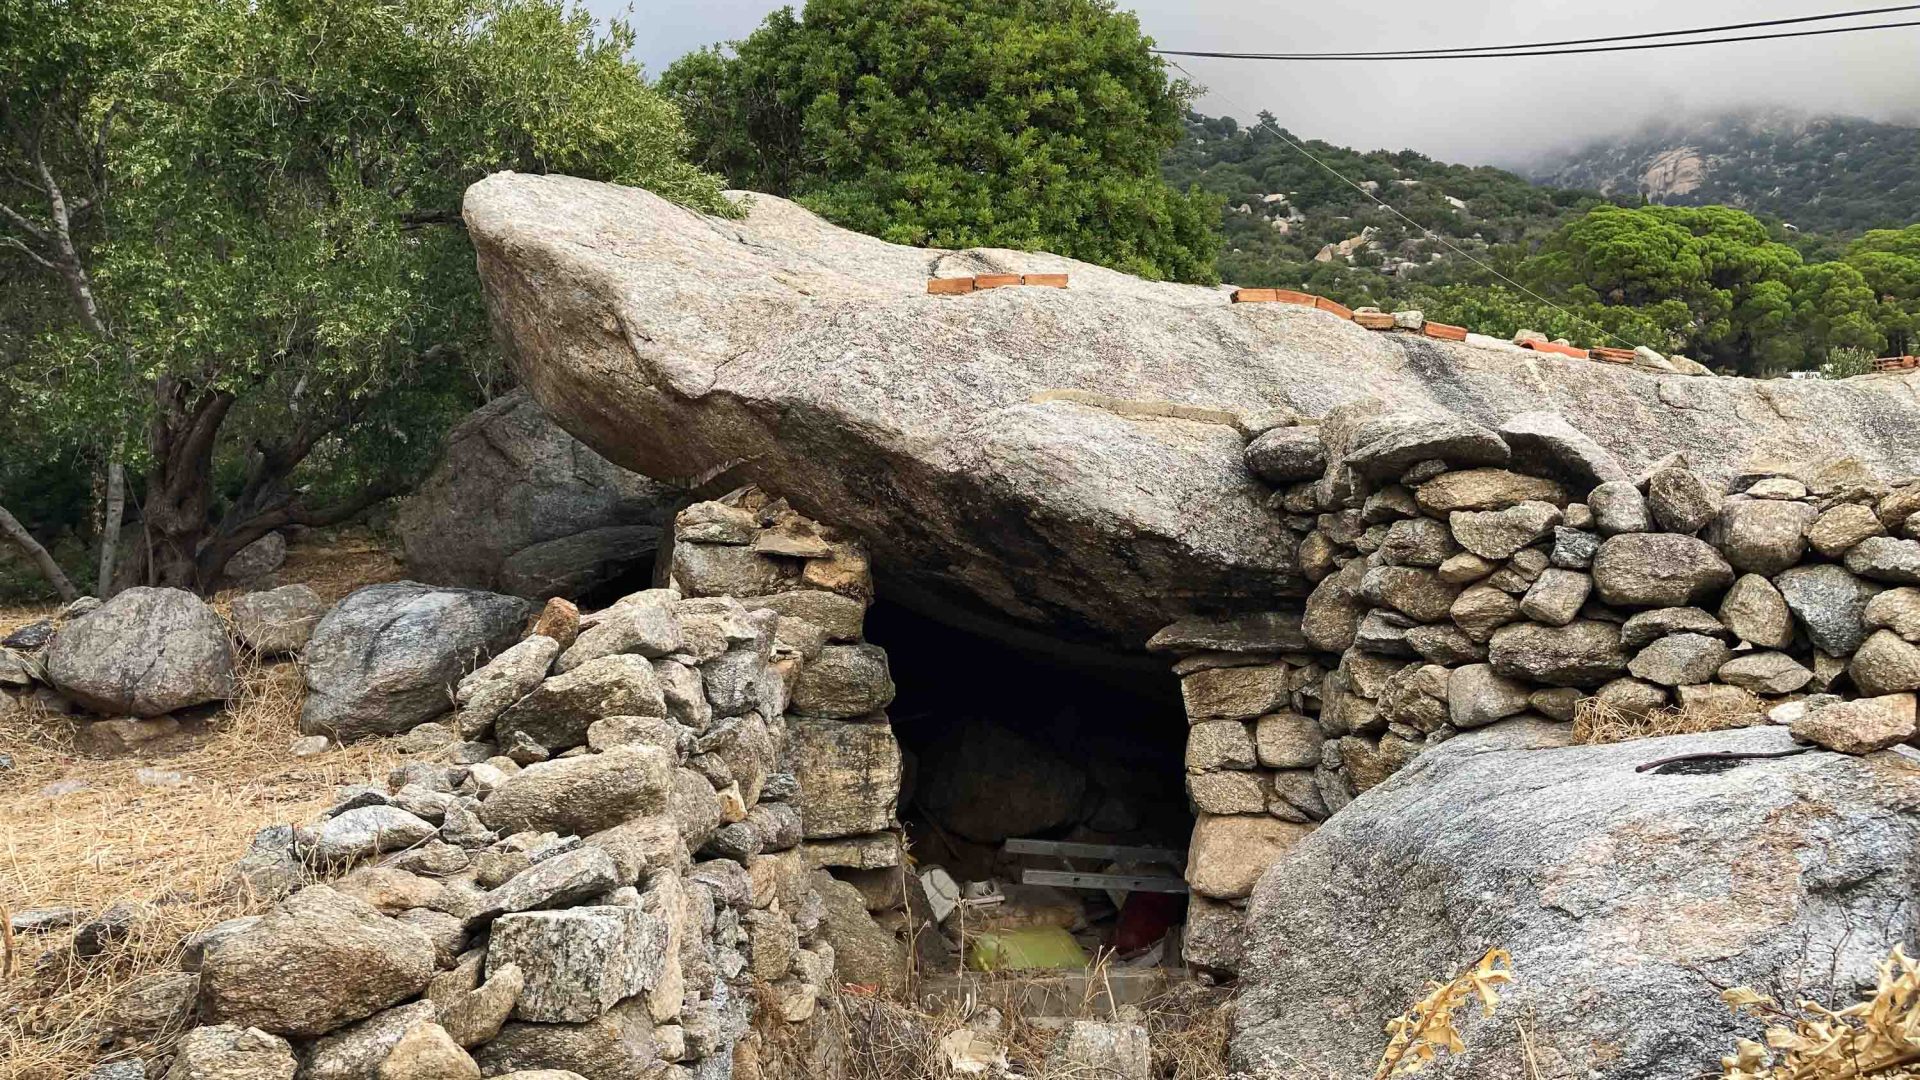 A stone house hidden into the mountain.